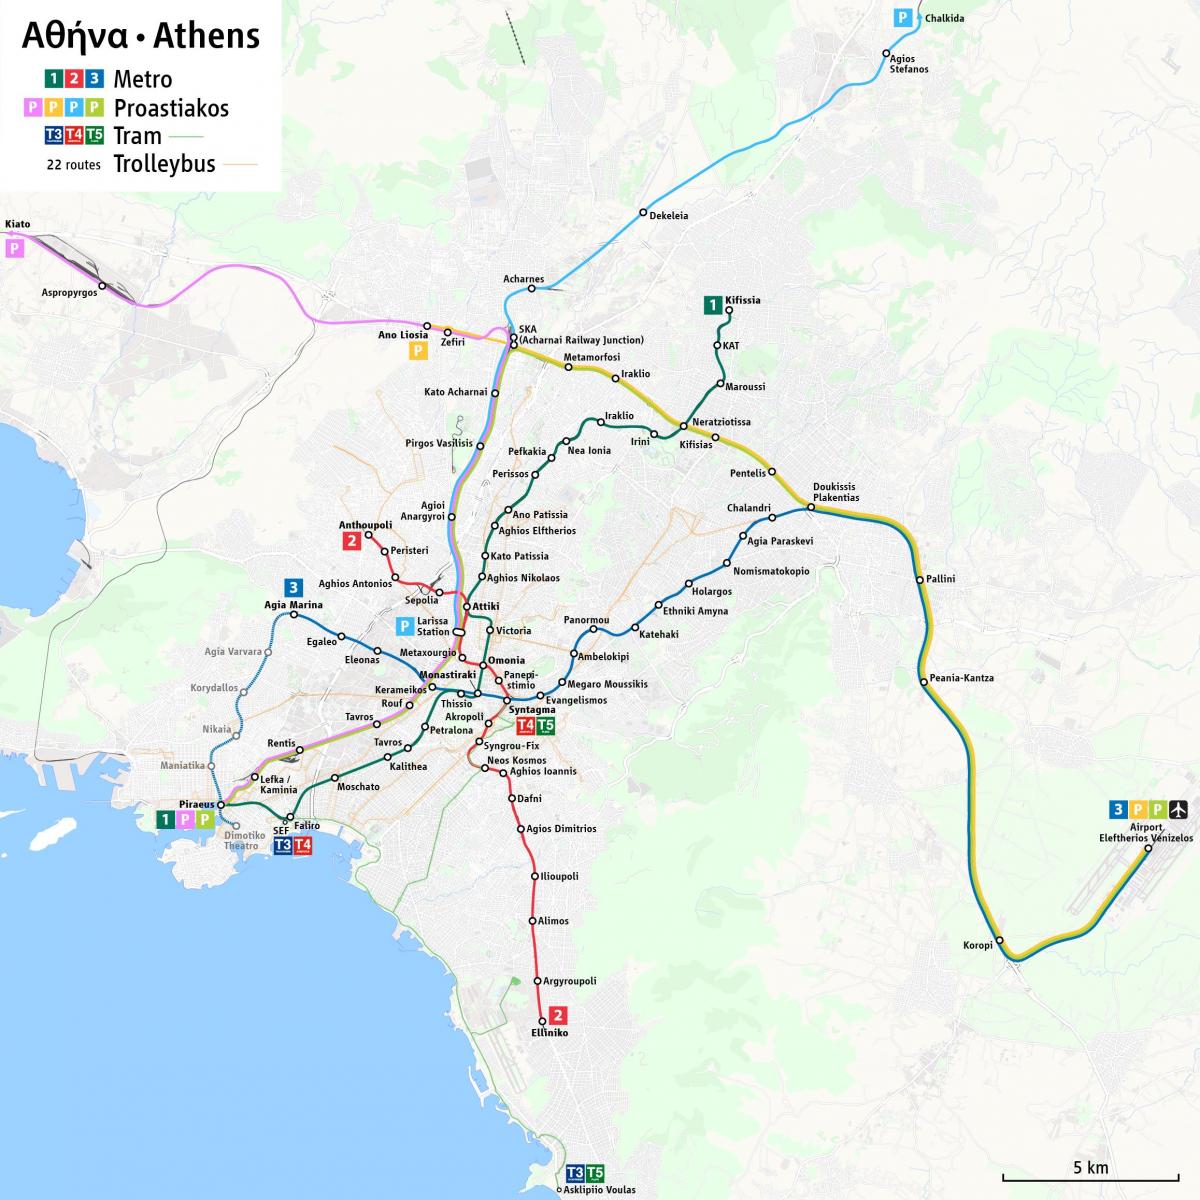 Mappa delle stazioni ferroviarie di Atene